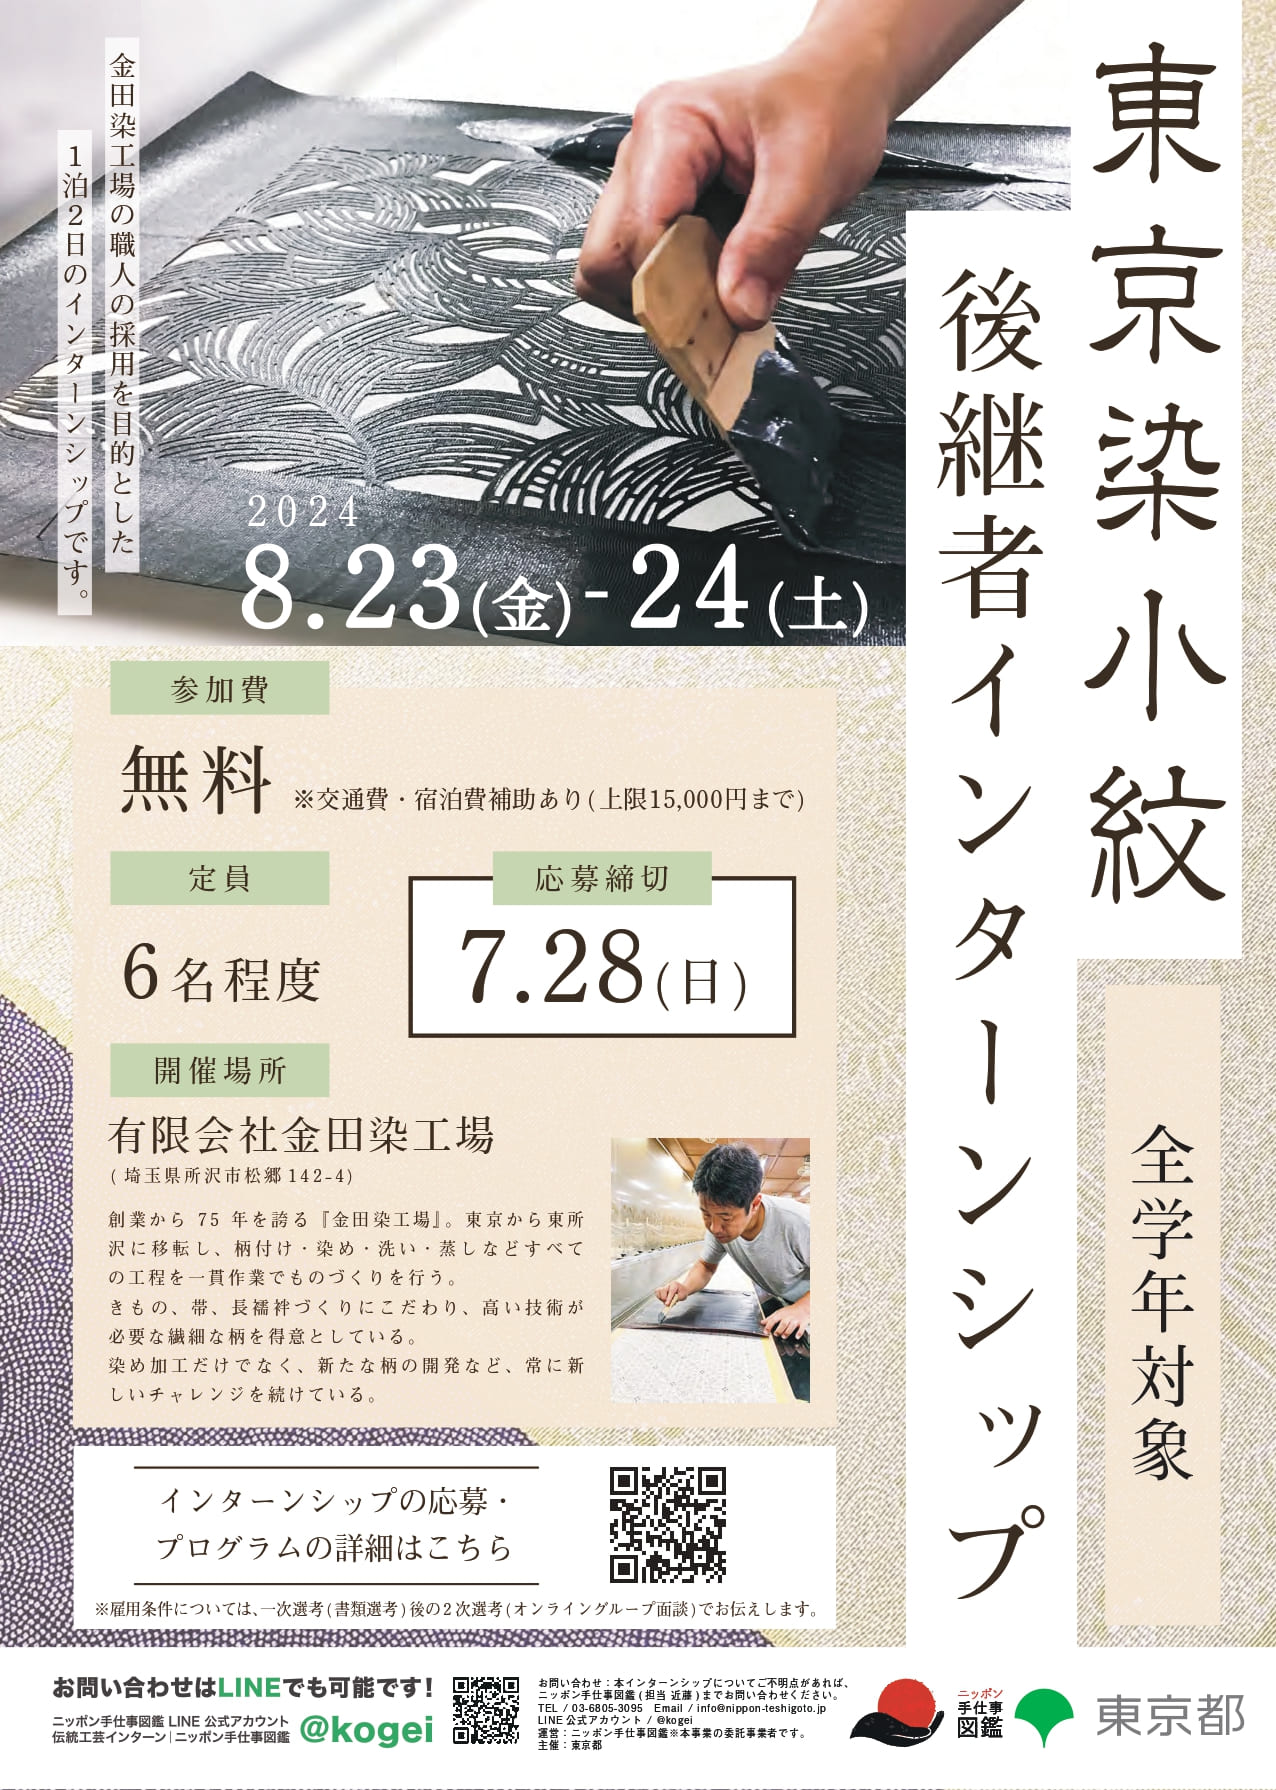 国指定伝統的工芸品 東京染小紋後継者インターンシップポスター